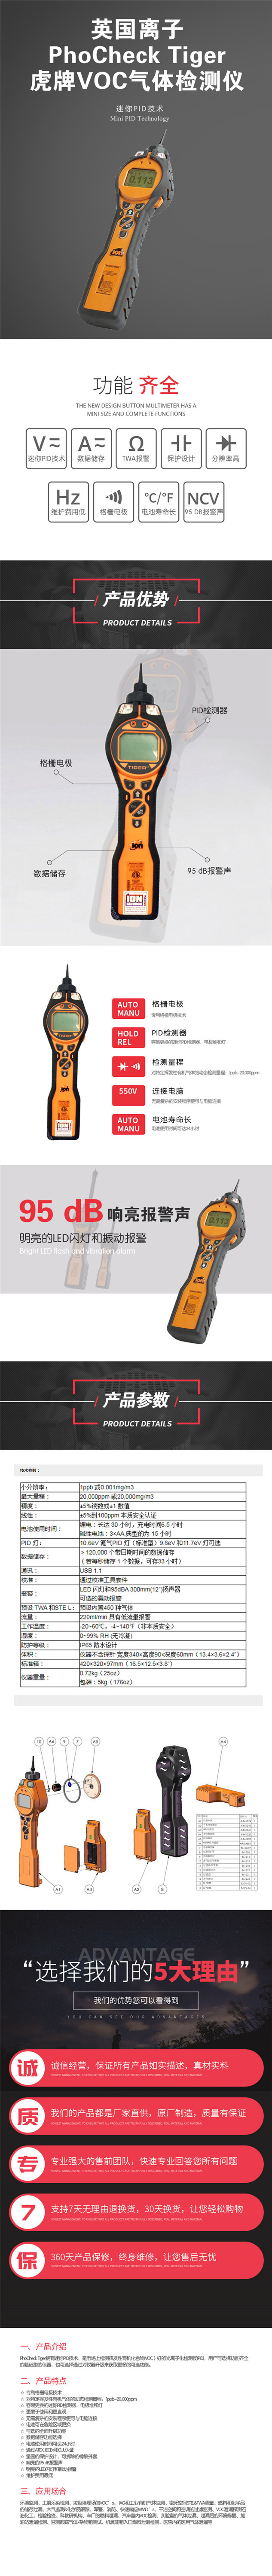 TIGER LT便携式 VOC 气体检测仪 能在短时间内提供测量结果